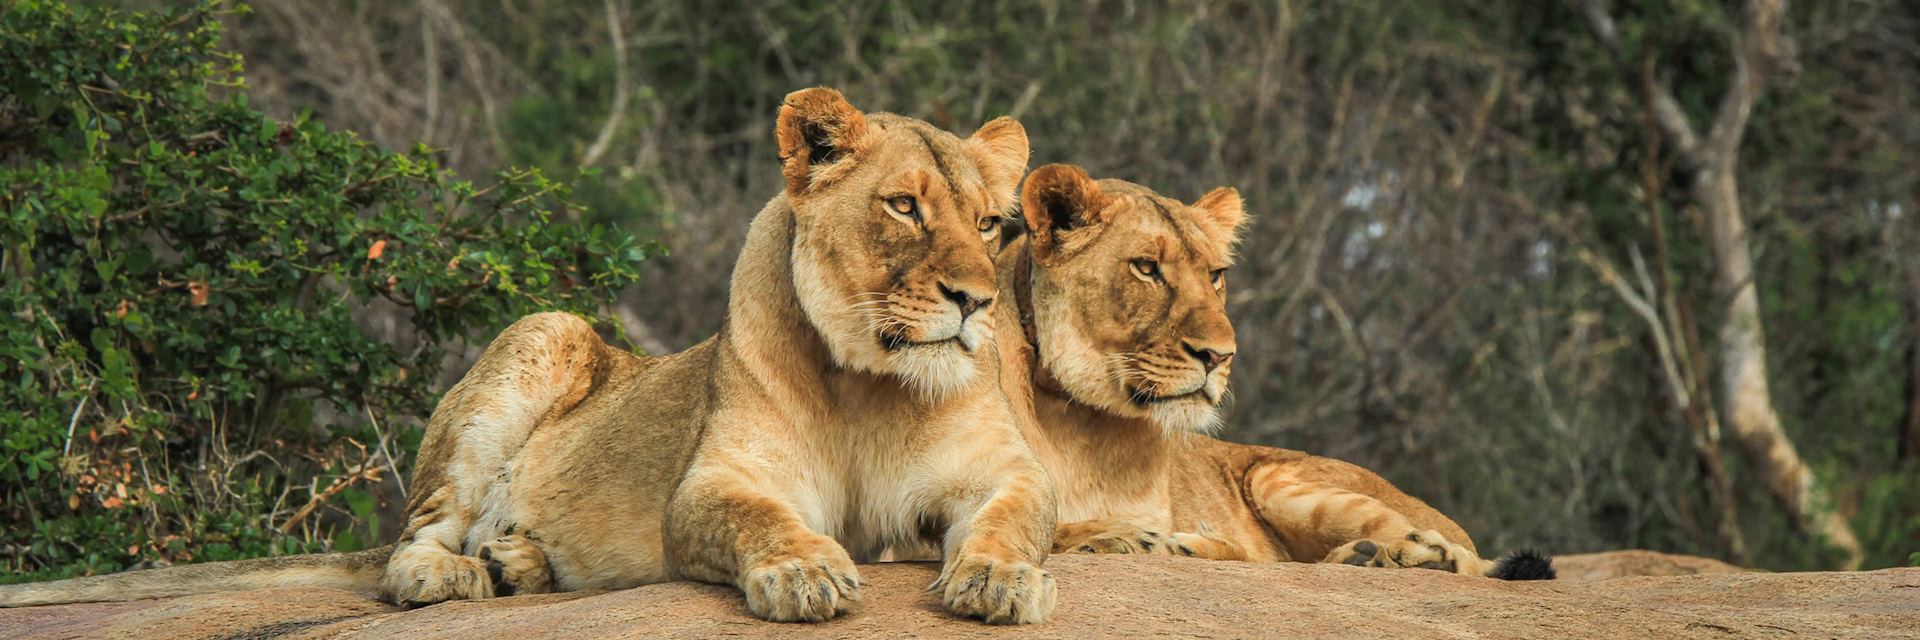 Lion, Kruger National Park